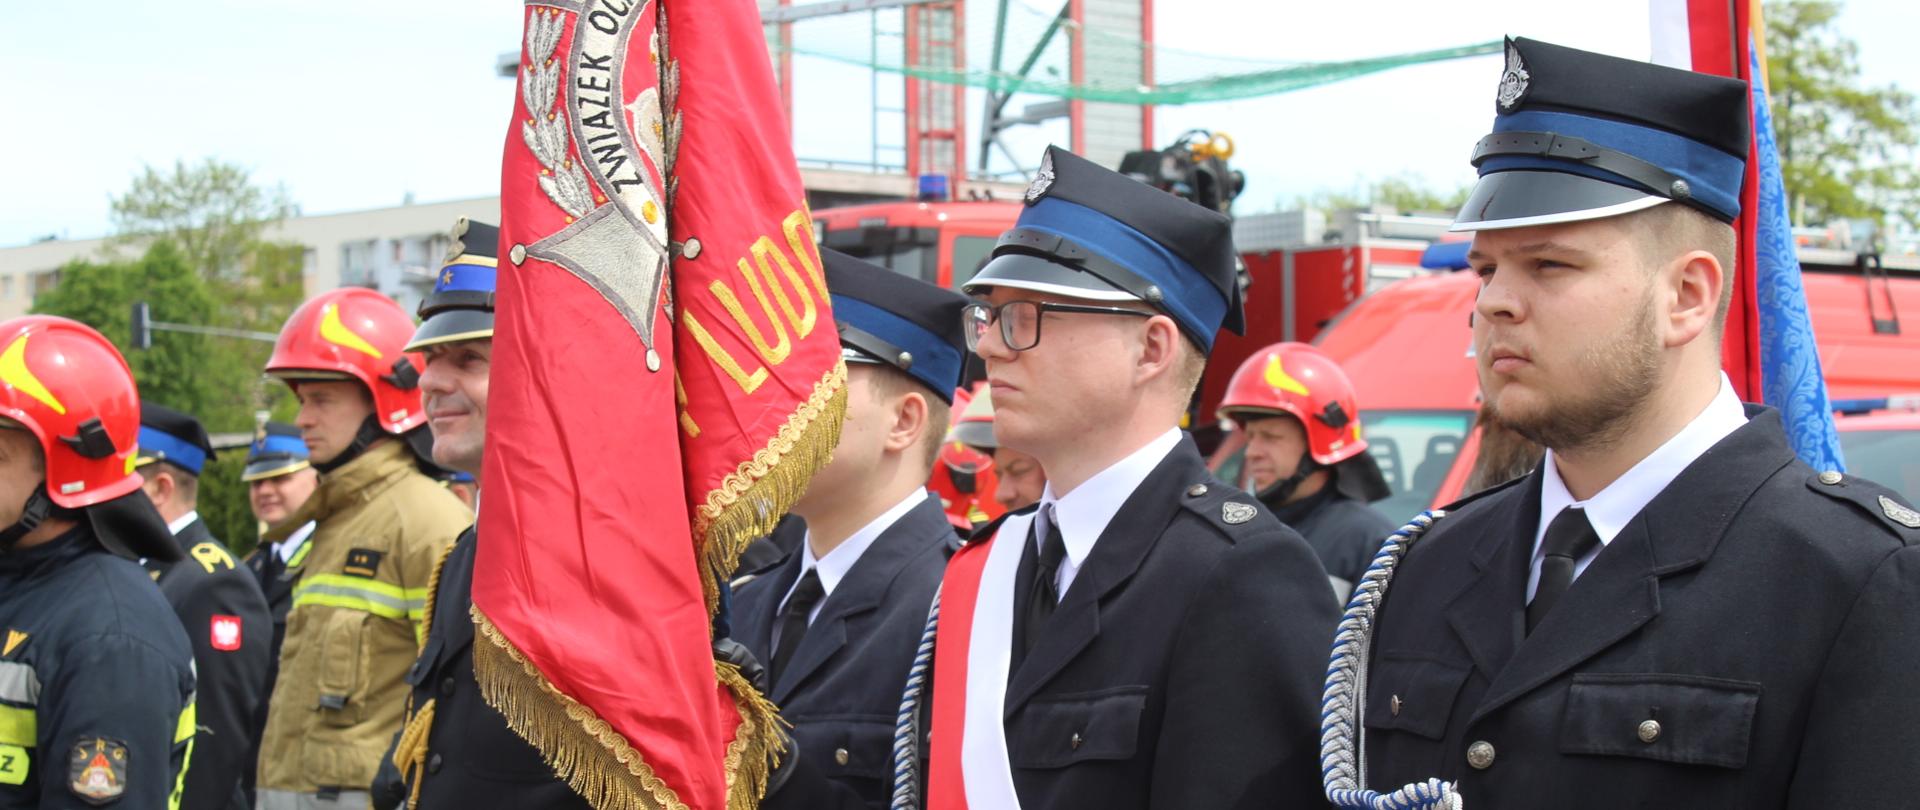 Świętowali Dzień Strażaka i 30-lecie Państwowej Straży Pożarnej